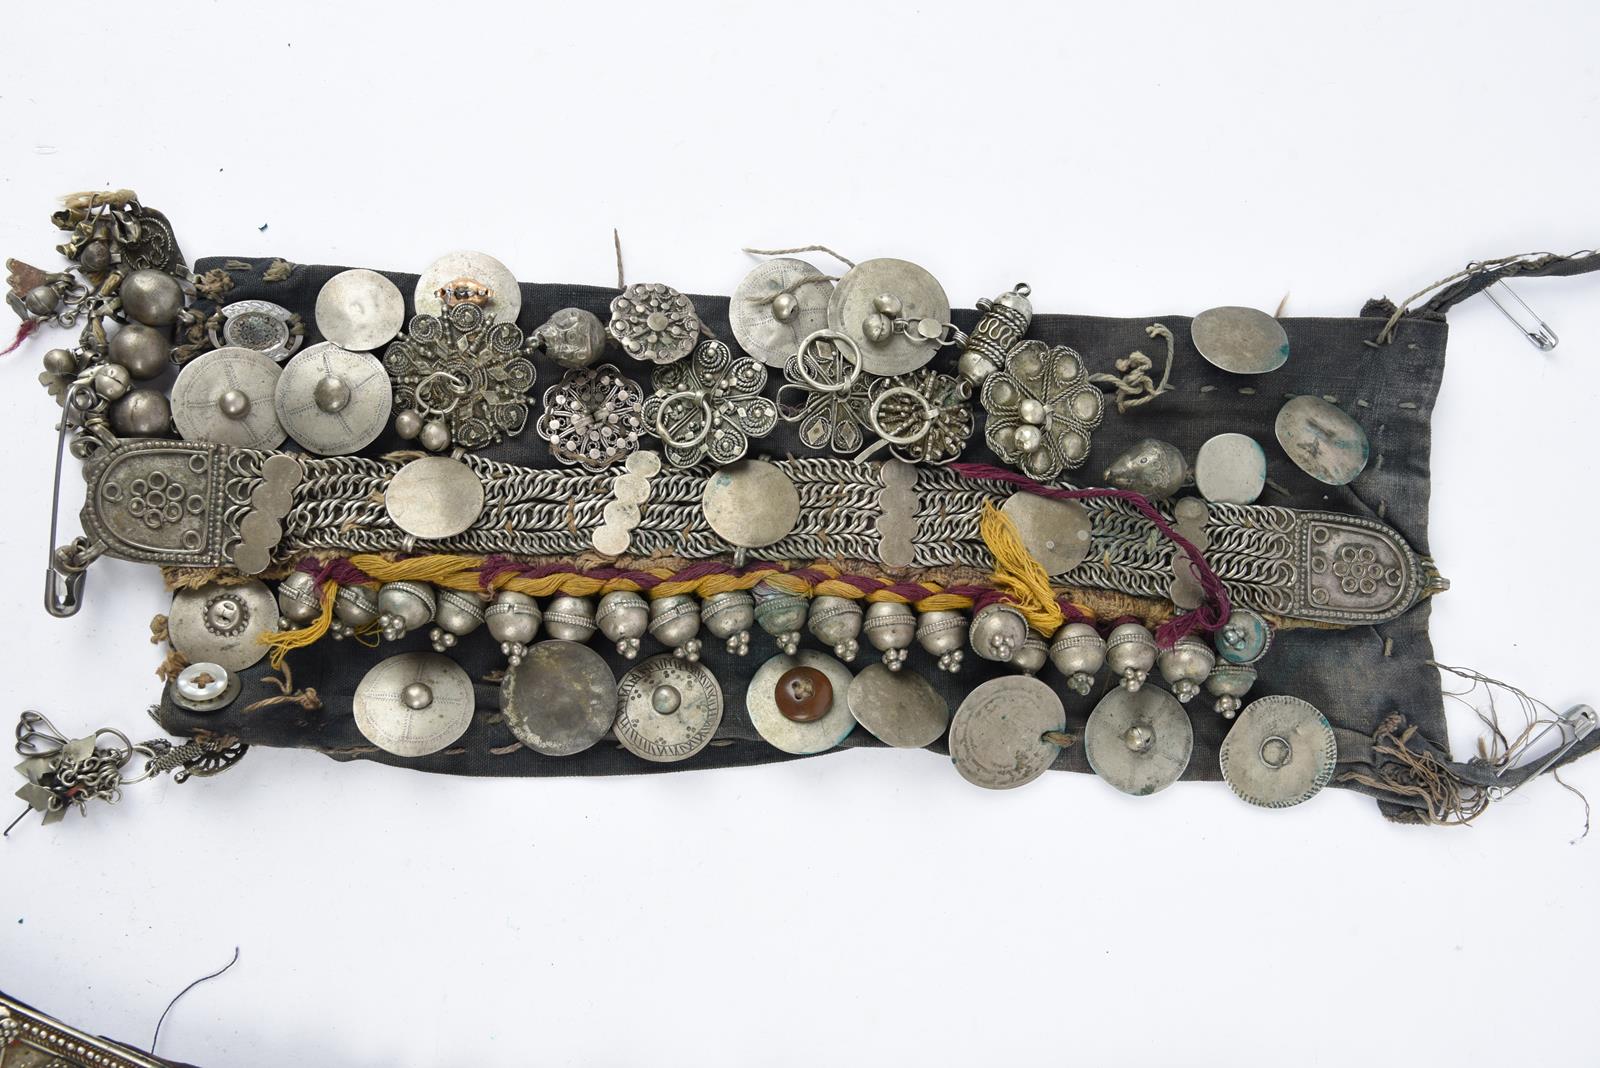 λA Bedouin amulet chest ornament cloth with numerous sewn on amulets and beads, 62cm long, and three - Bild 8 aus 27